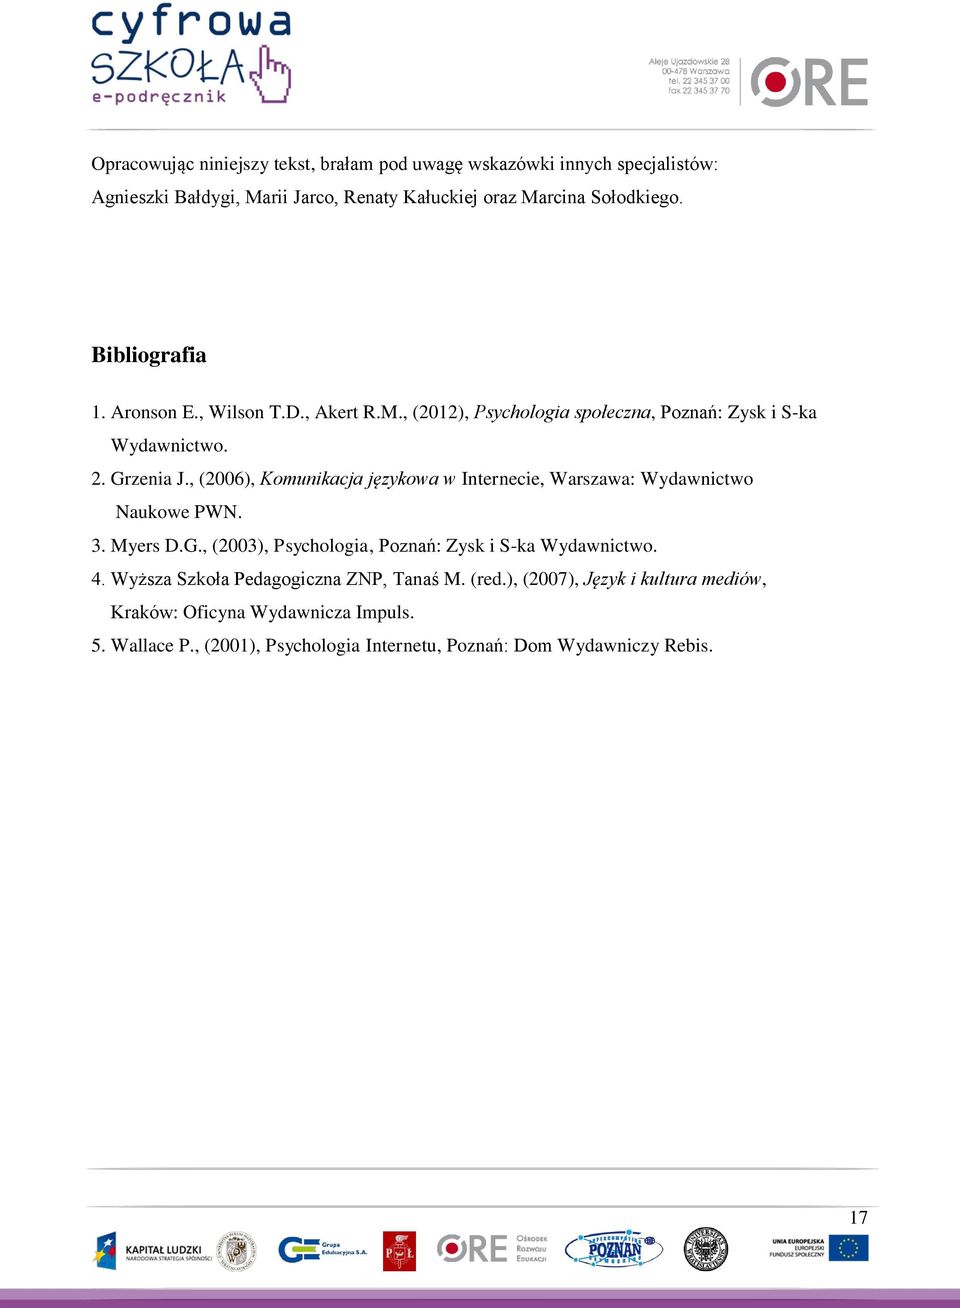 , (2006), Komunikacja językowa w Internecie, Warszawa: Wydawnictwo Naukowe PWN. 3. Myers D.G., (2003), Psychologia, Poznań: Zysk i S-ka Wydawnictwo. 4.